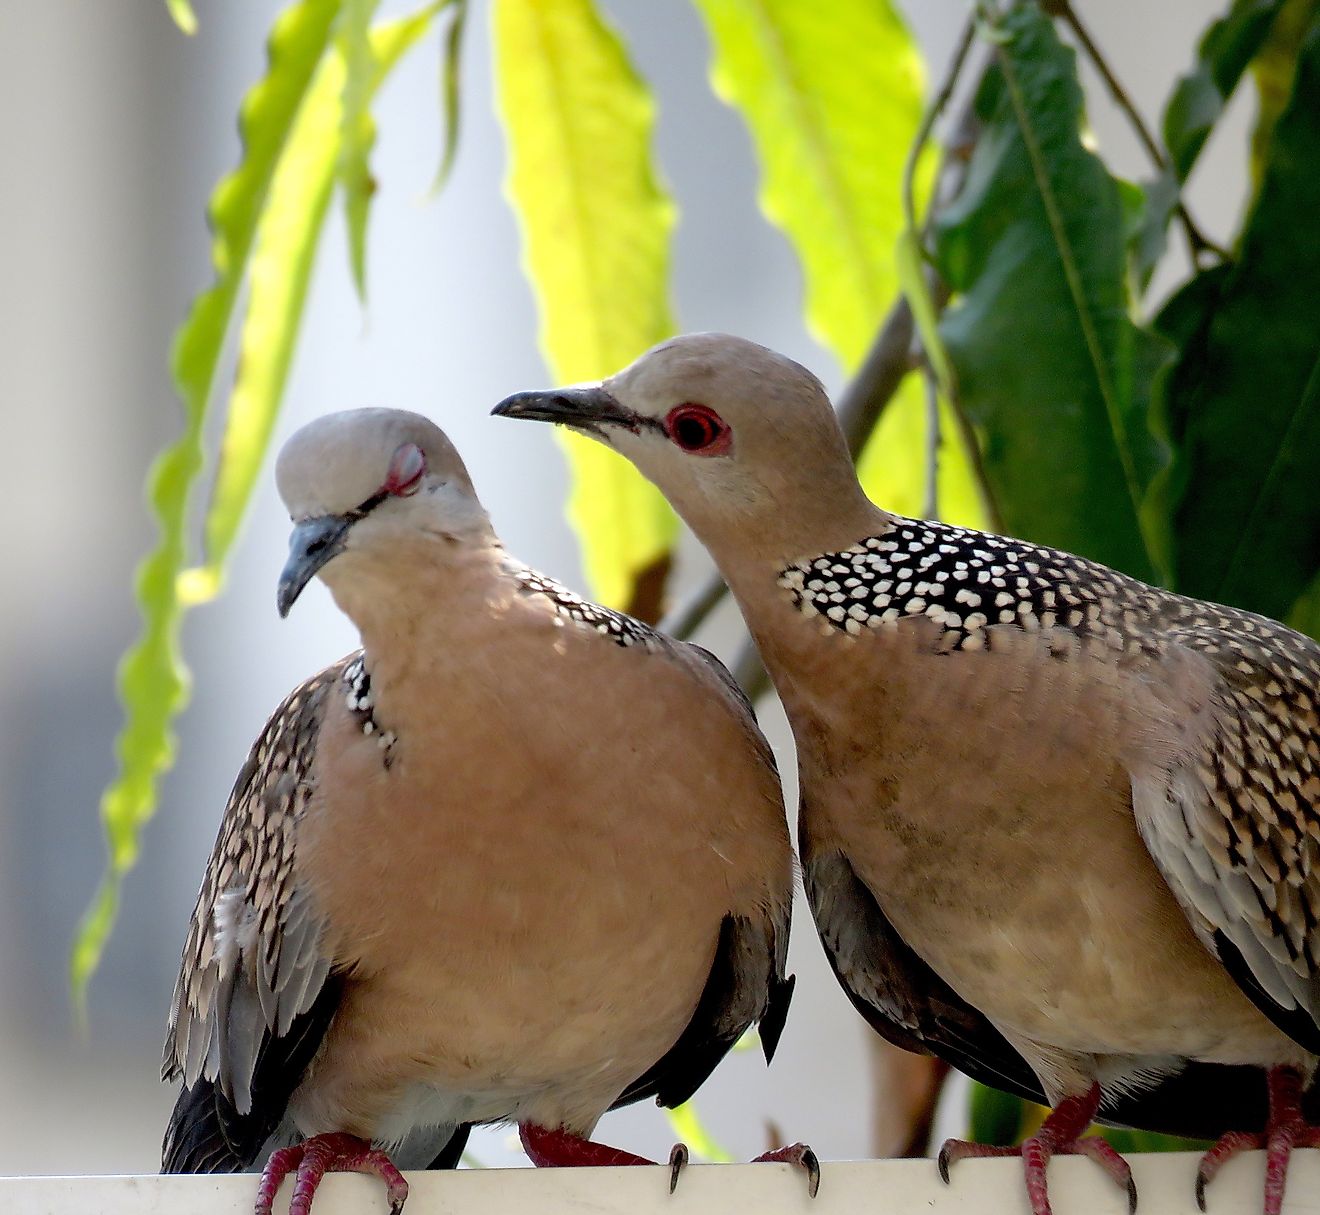 Two lovestruck spotted doves. Image credit: Oishimaya Sen Nag